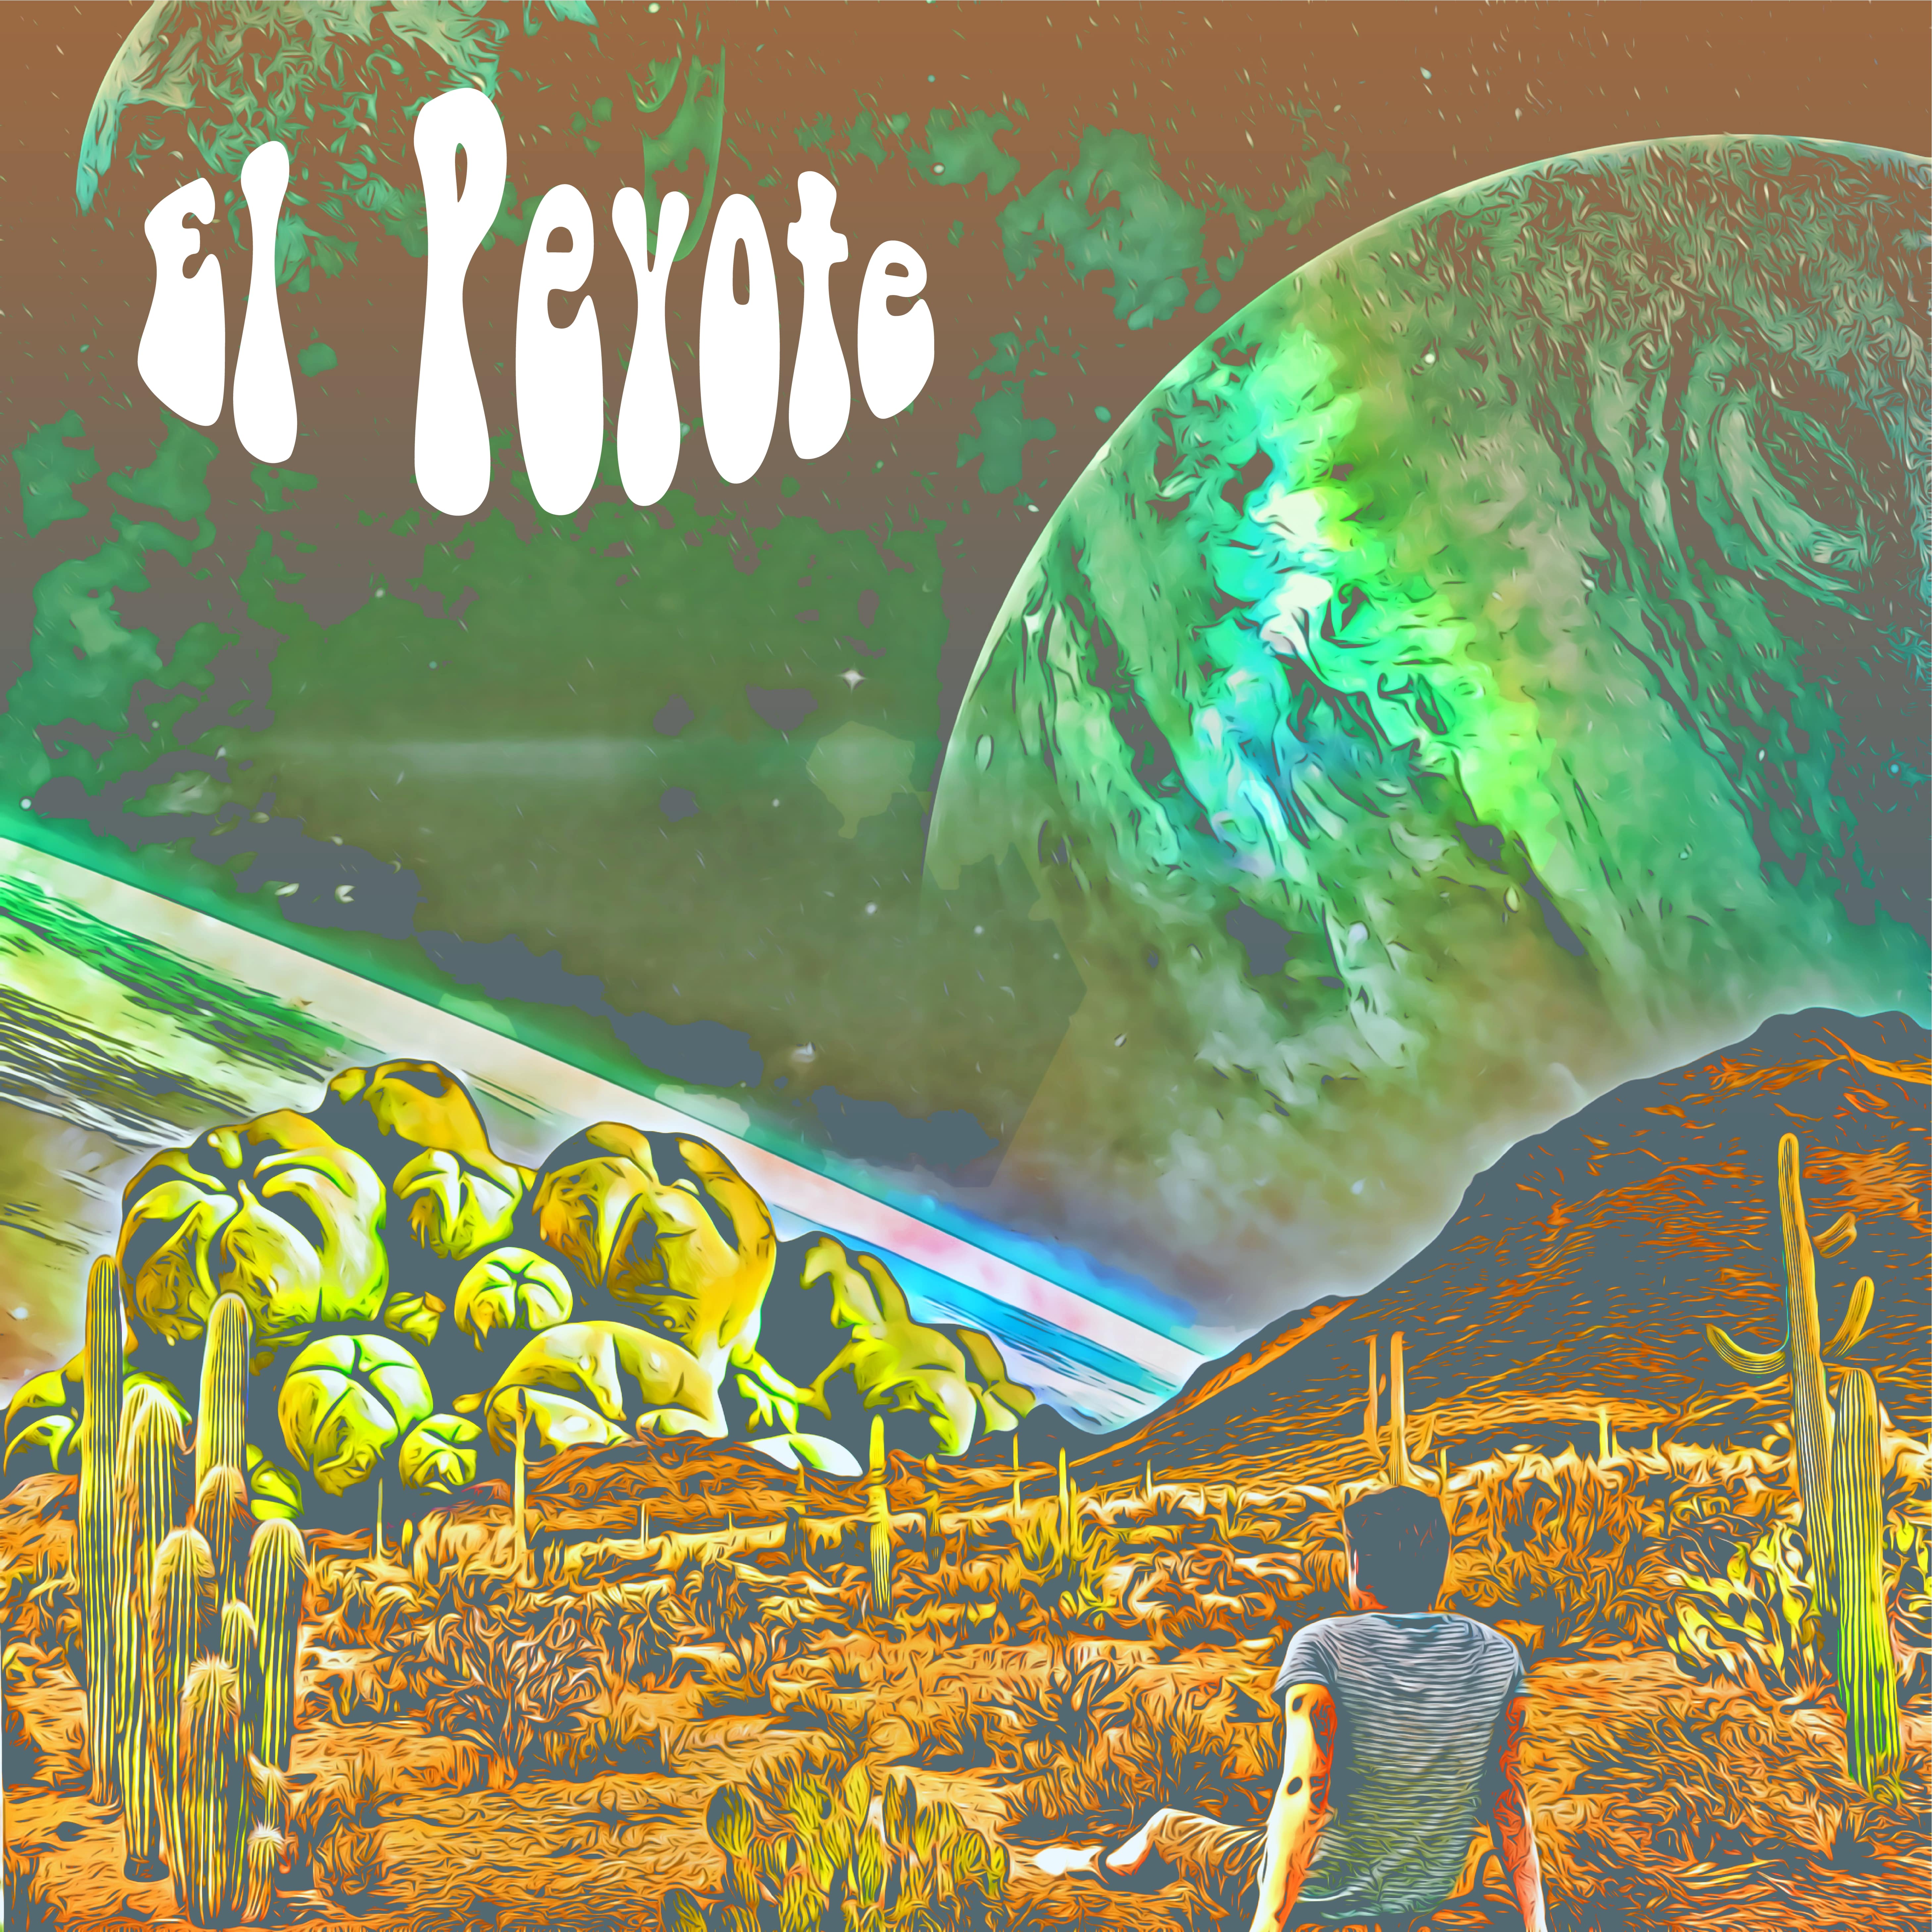 EL PEYOTE – “EL PEYOTE” EP